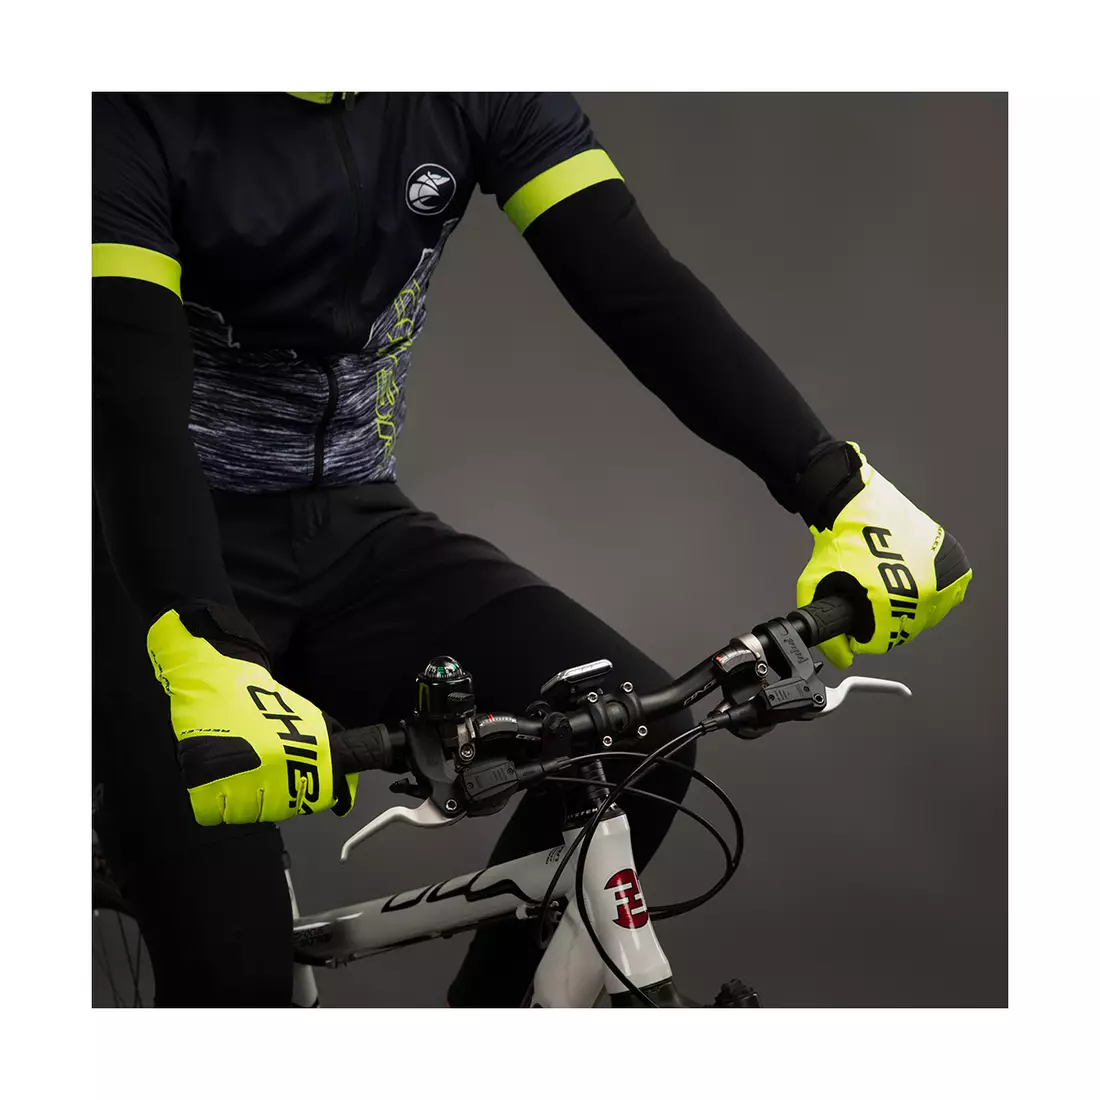 CHIBA BIOXCELL WARM WINTER zimní cyklistické rukavice Primaloft, fluo 3160020